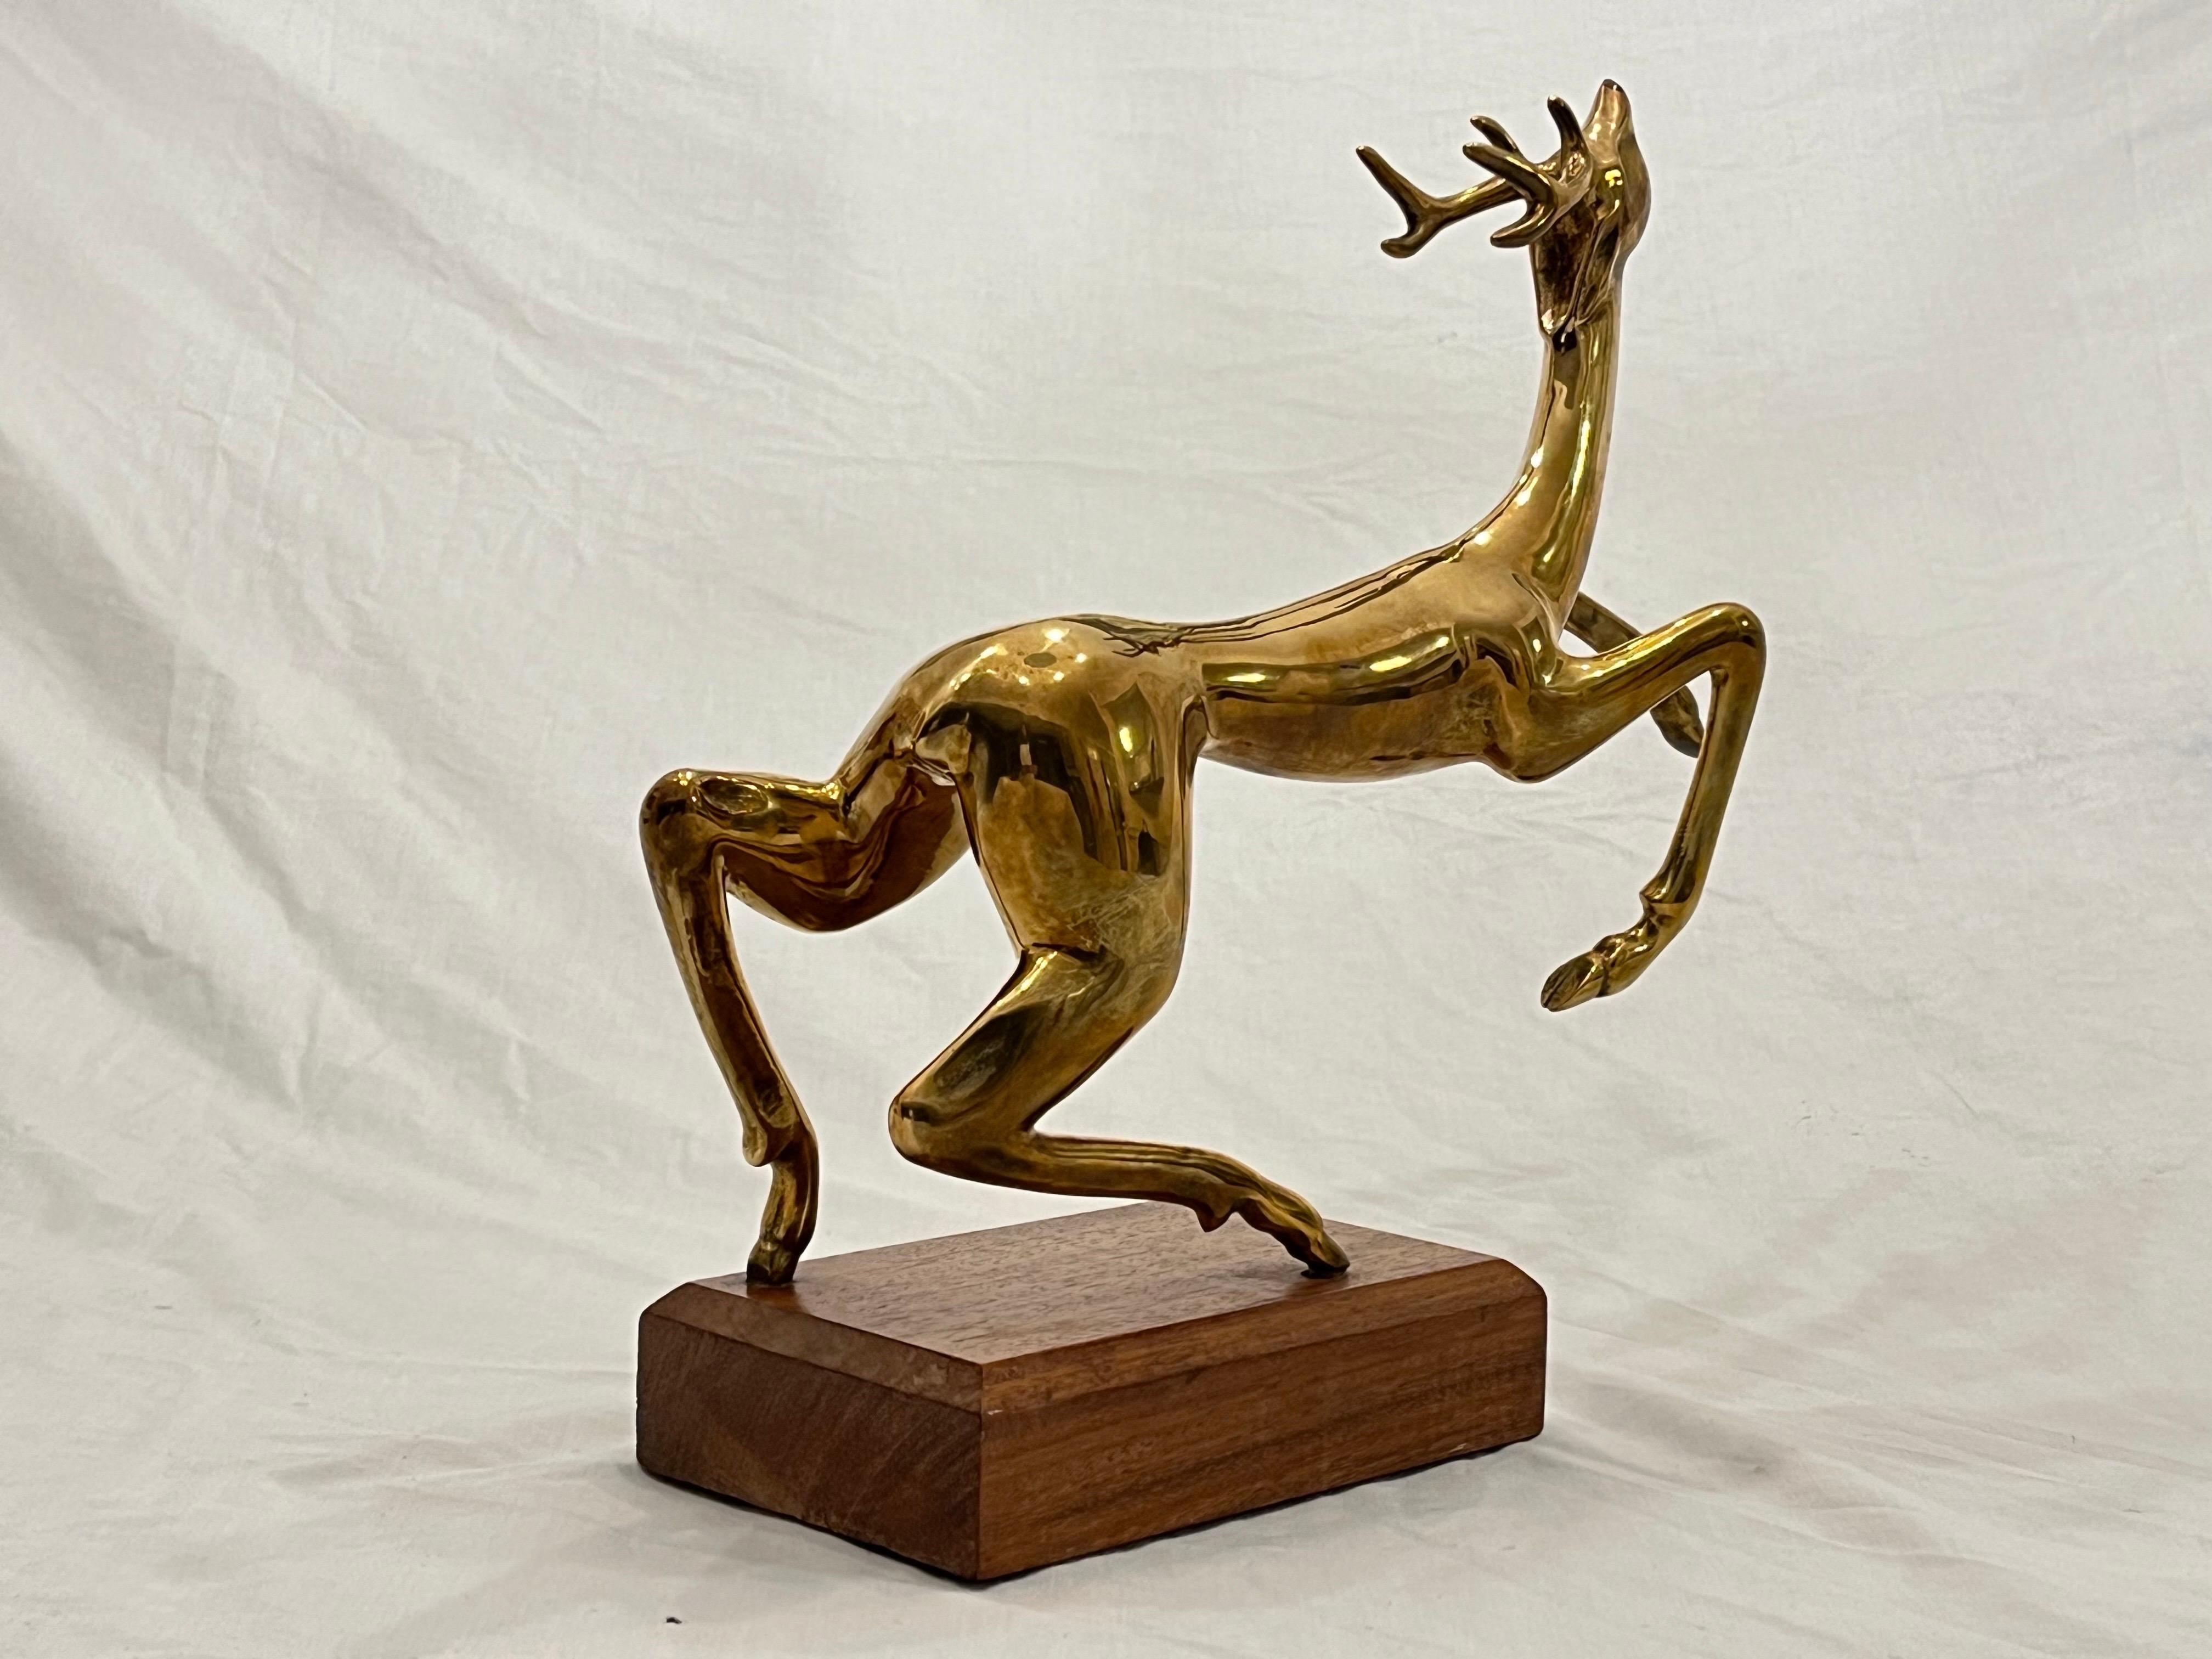 Sculpture abstraite en bronze massif de Hattakitkosol Somchai (1934 - 2000), datant de la fin du 20e siècle, vers les années 1970. Cette sculpture représente un cerf ou un renne aux bois fluides et bondissants. L'œuvre est signée Somchai et le